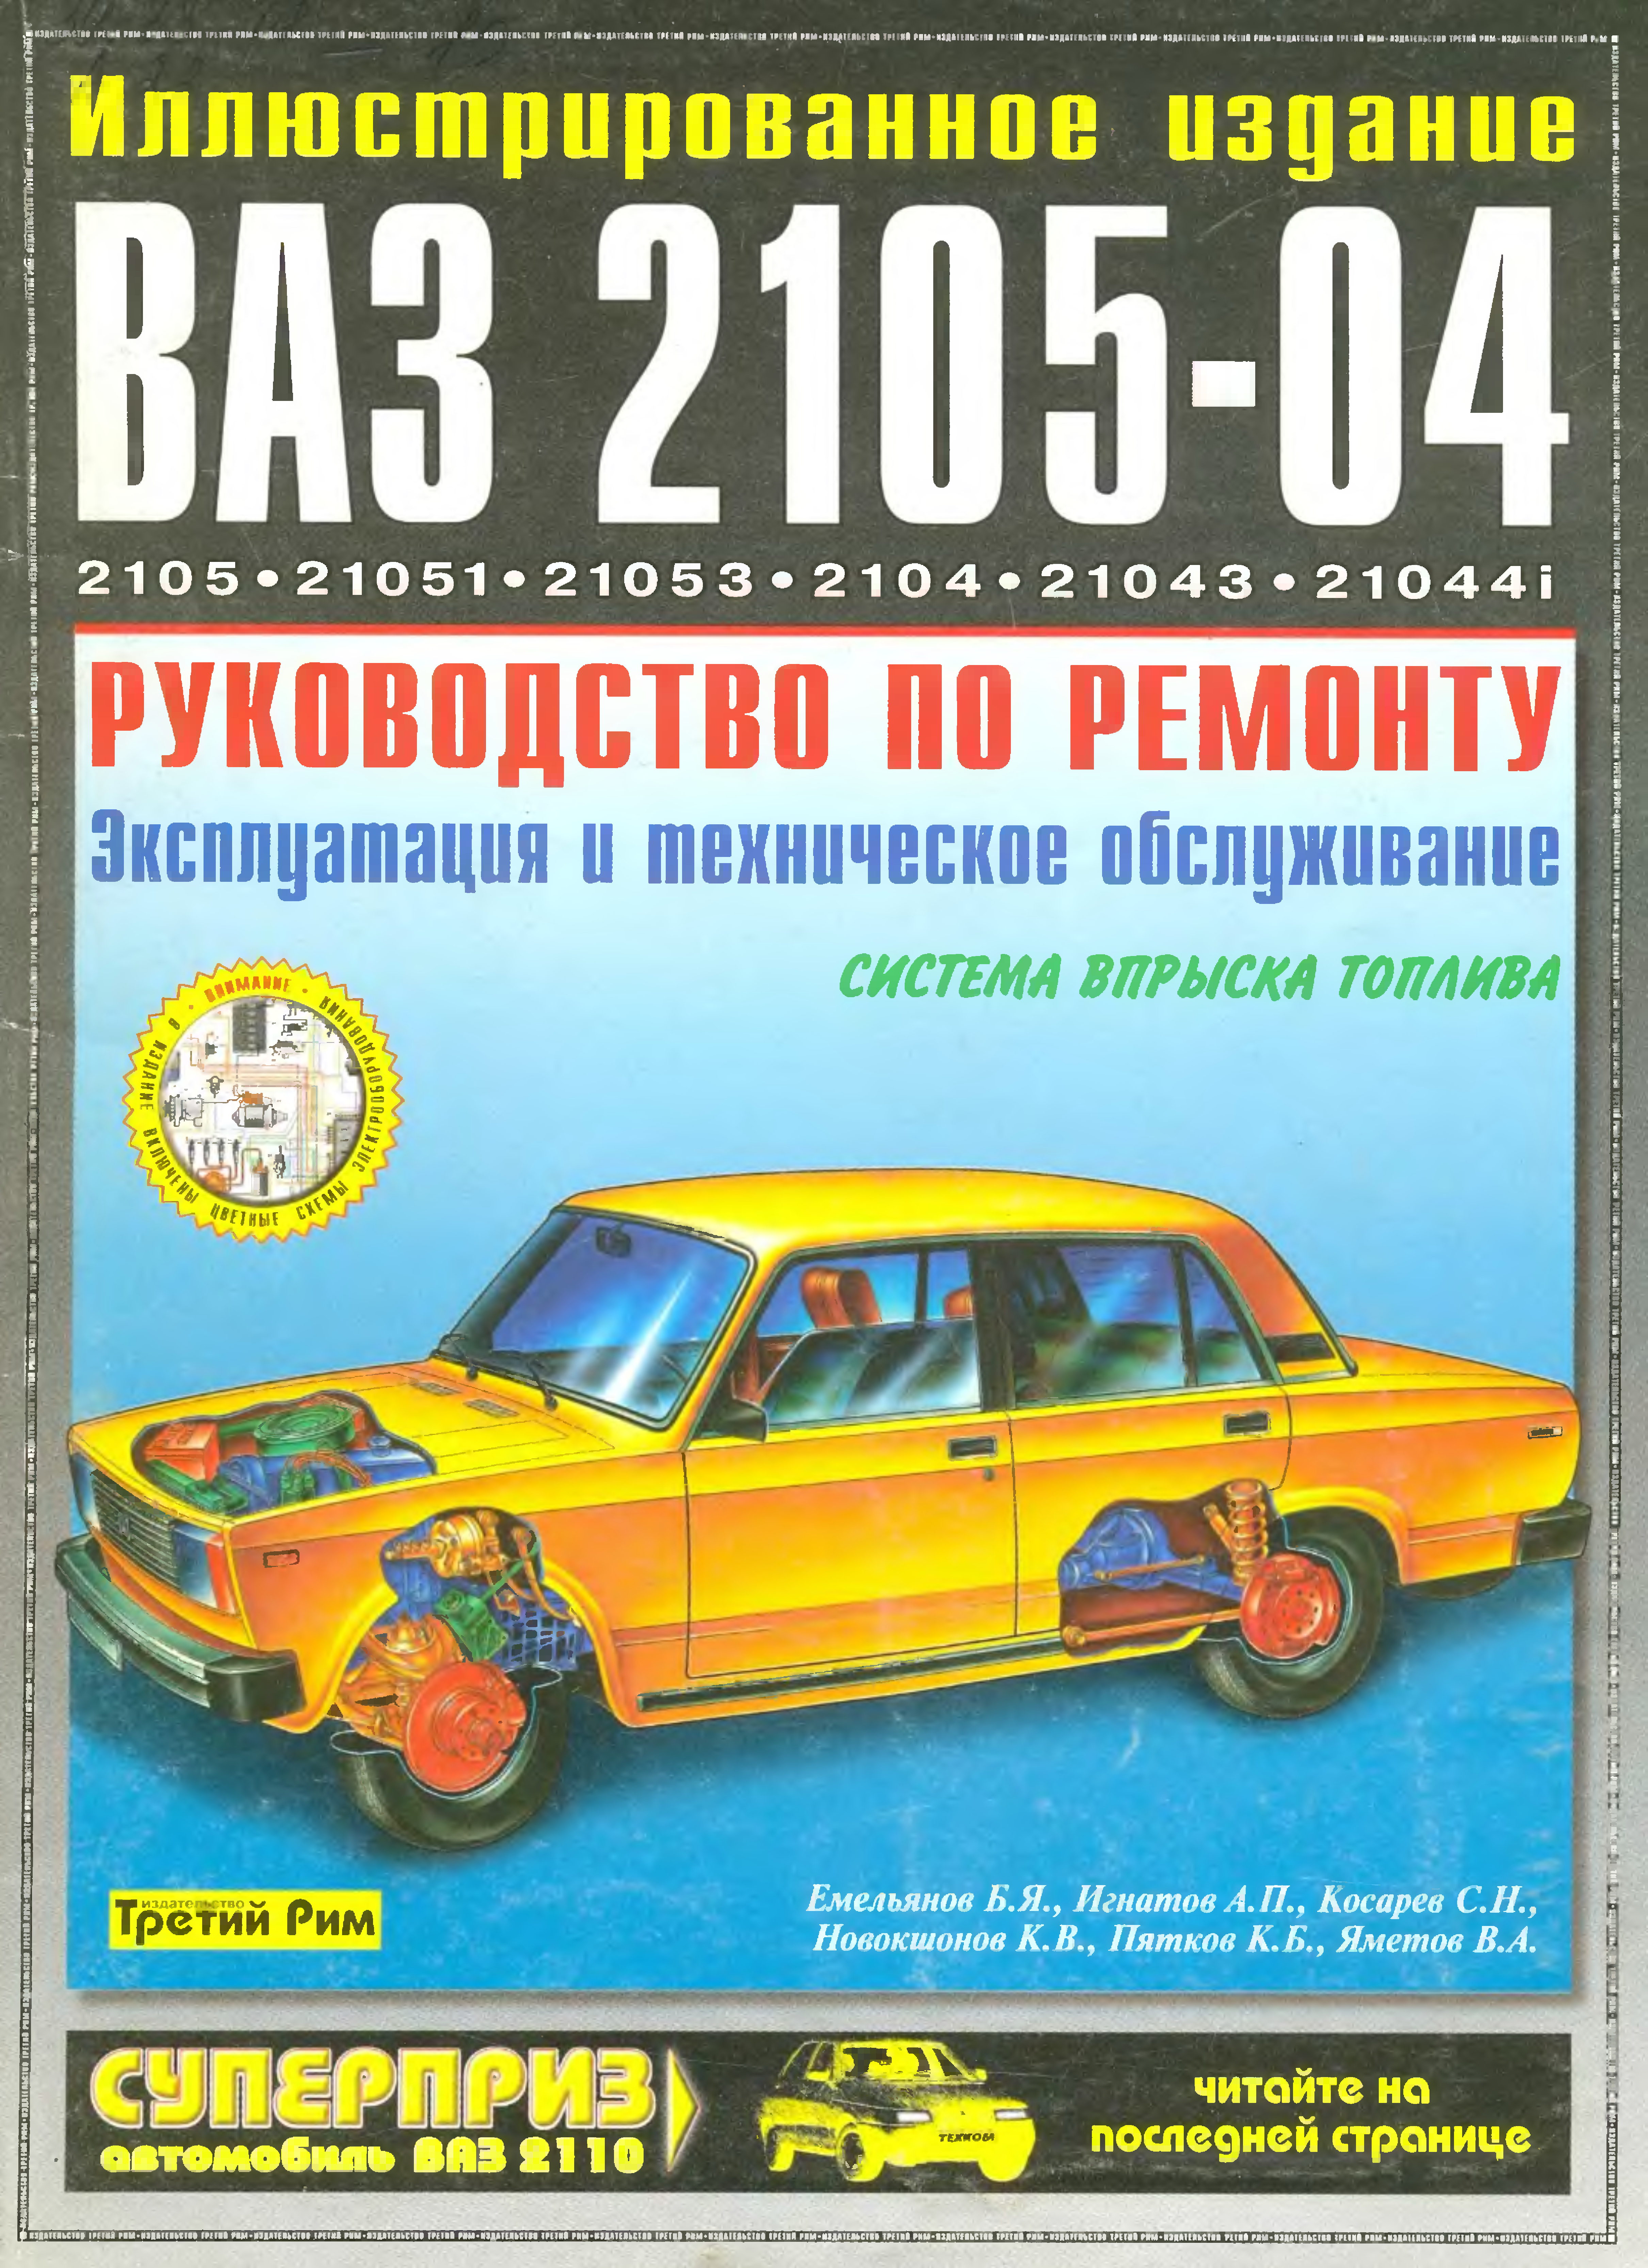 ВАЗ 2105 Жигули : Особенности ремонта автомобилей ВАЗ-21051 и ВАЗ-21053 У нас есть все фото и схемы необходимые для ремонта Полный мануал по ремонту и обслуживанию авто